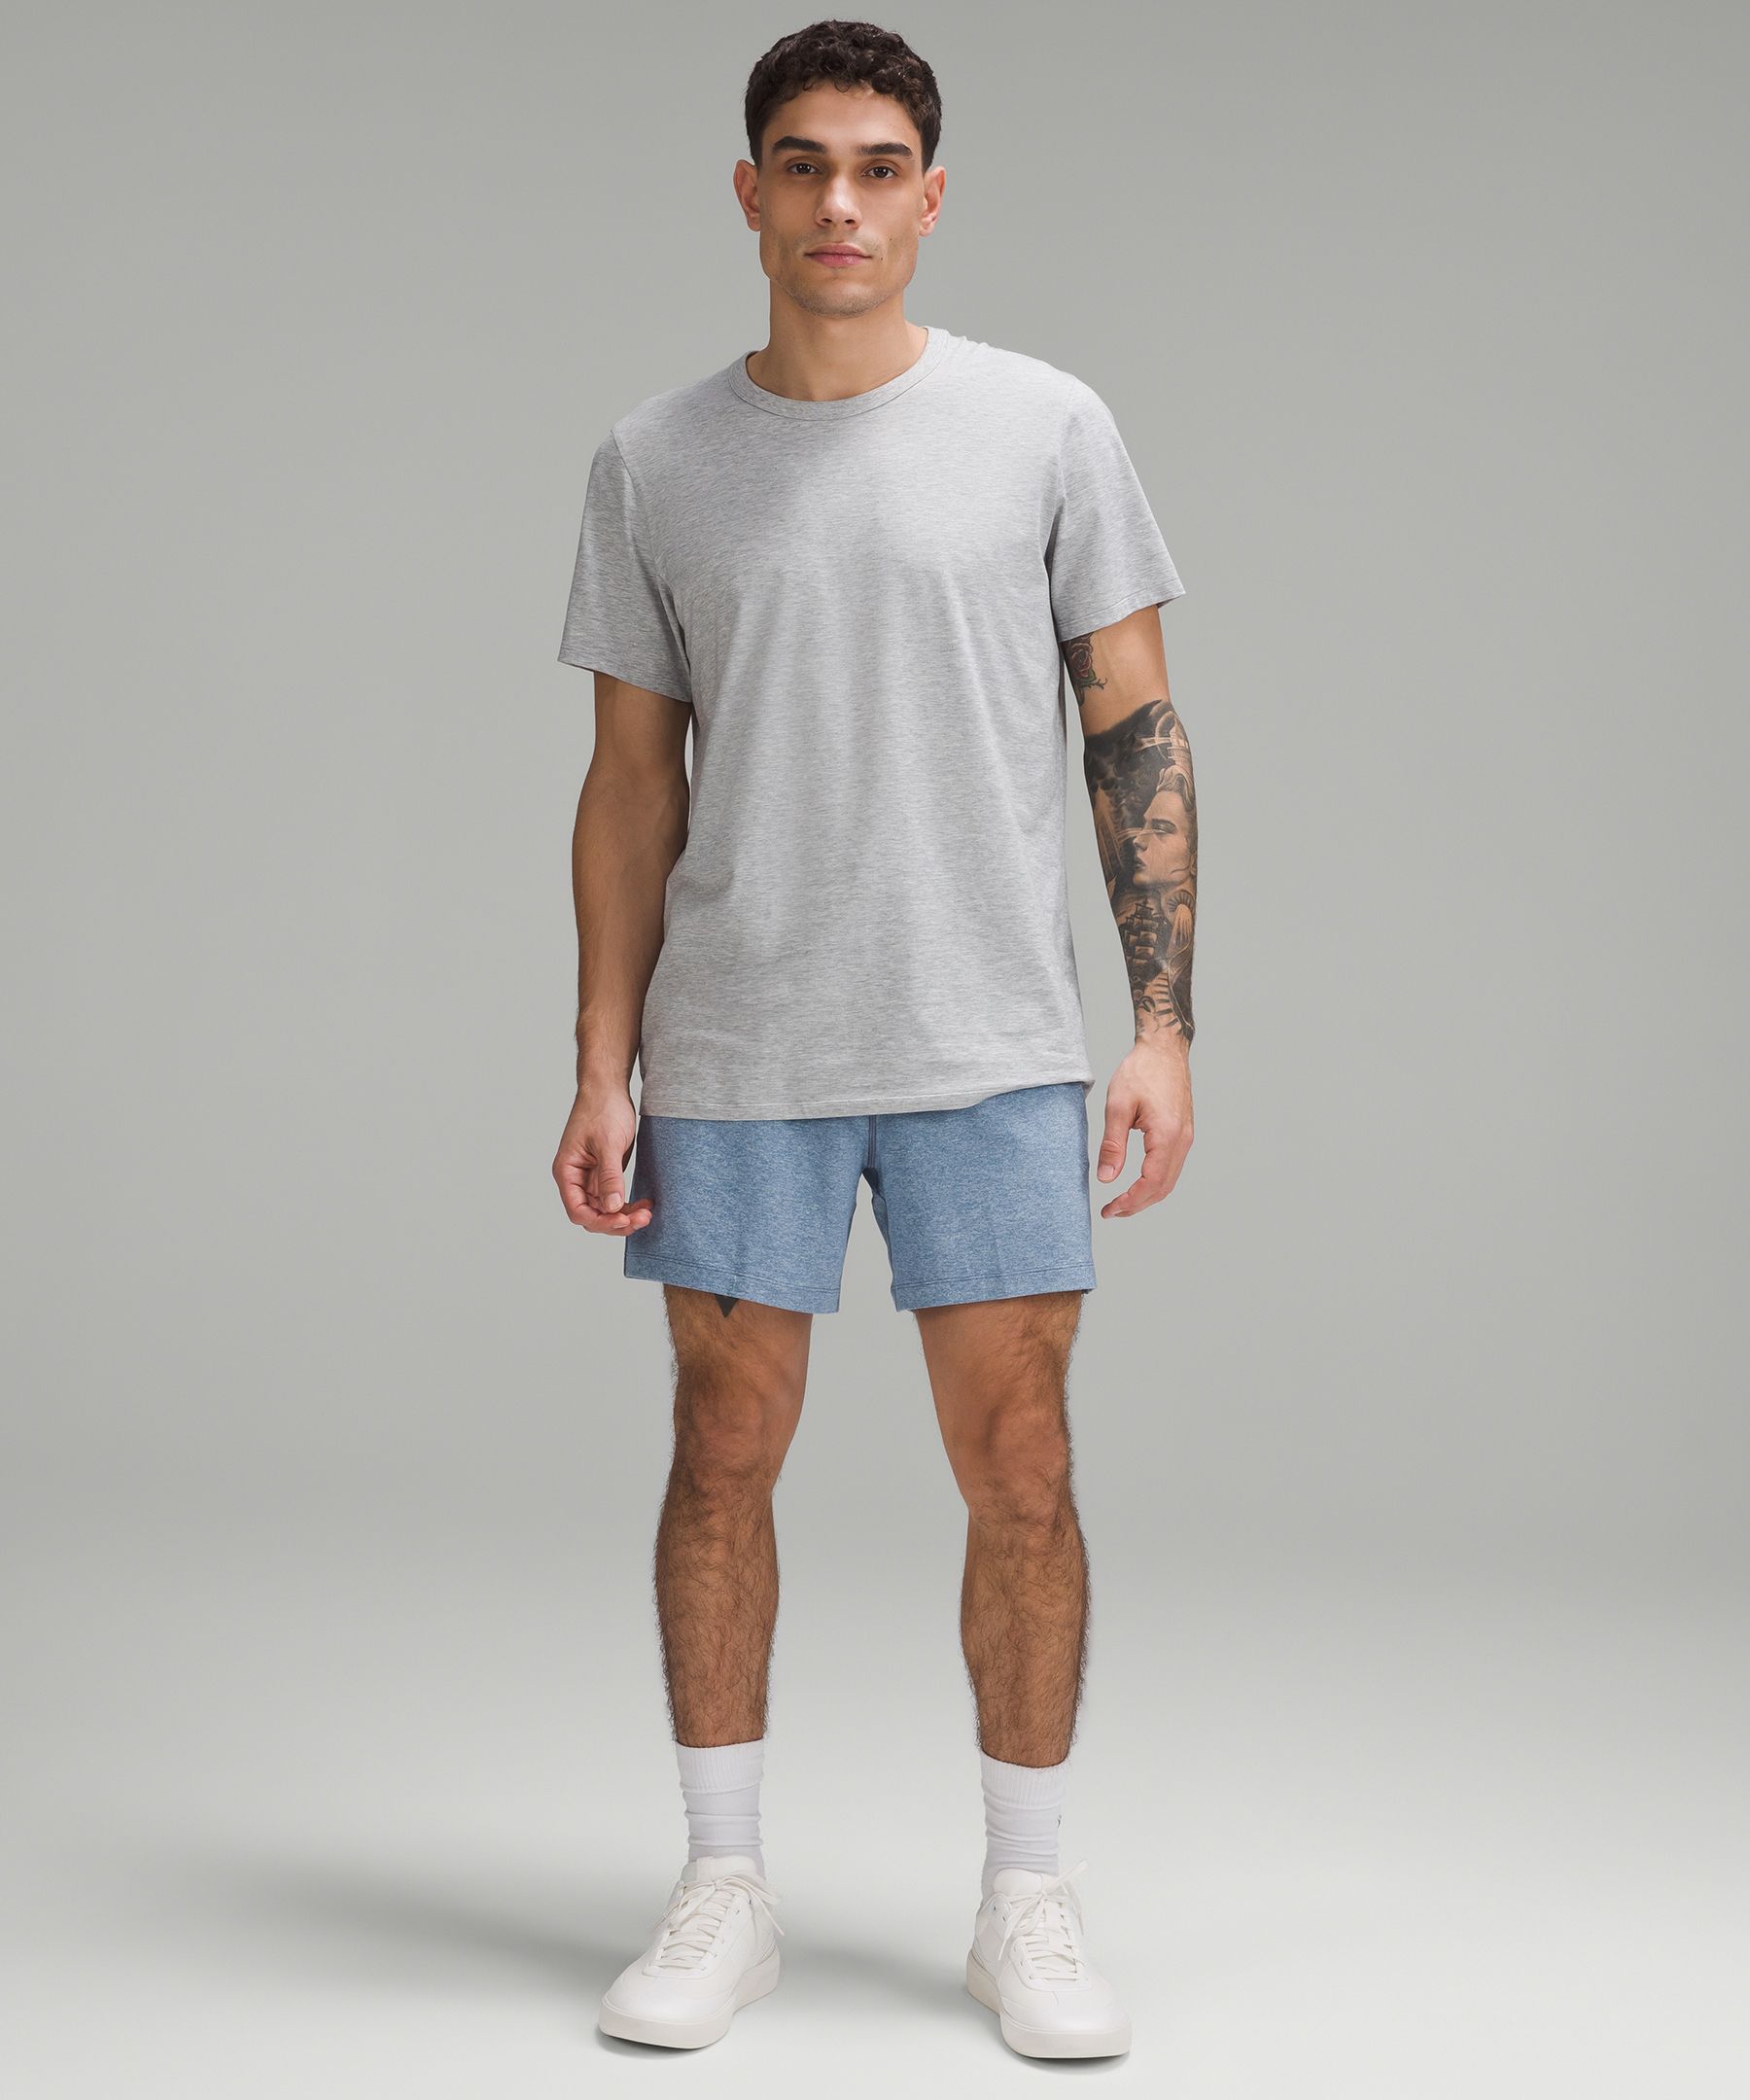 Soft Jersey Short-Sleeve Shirt